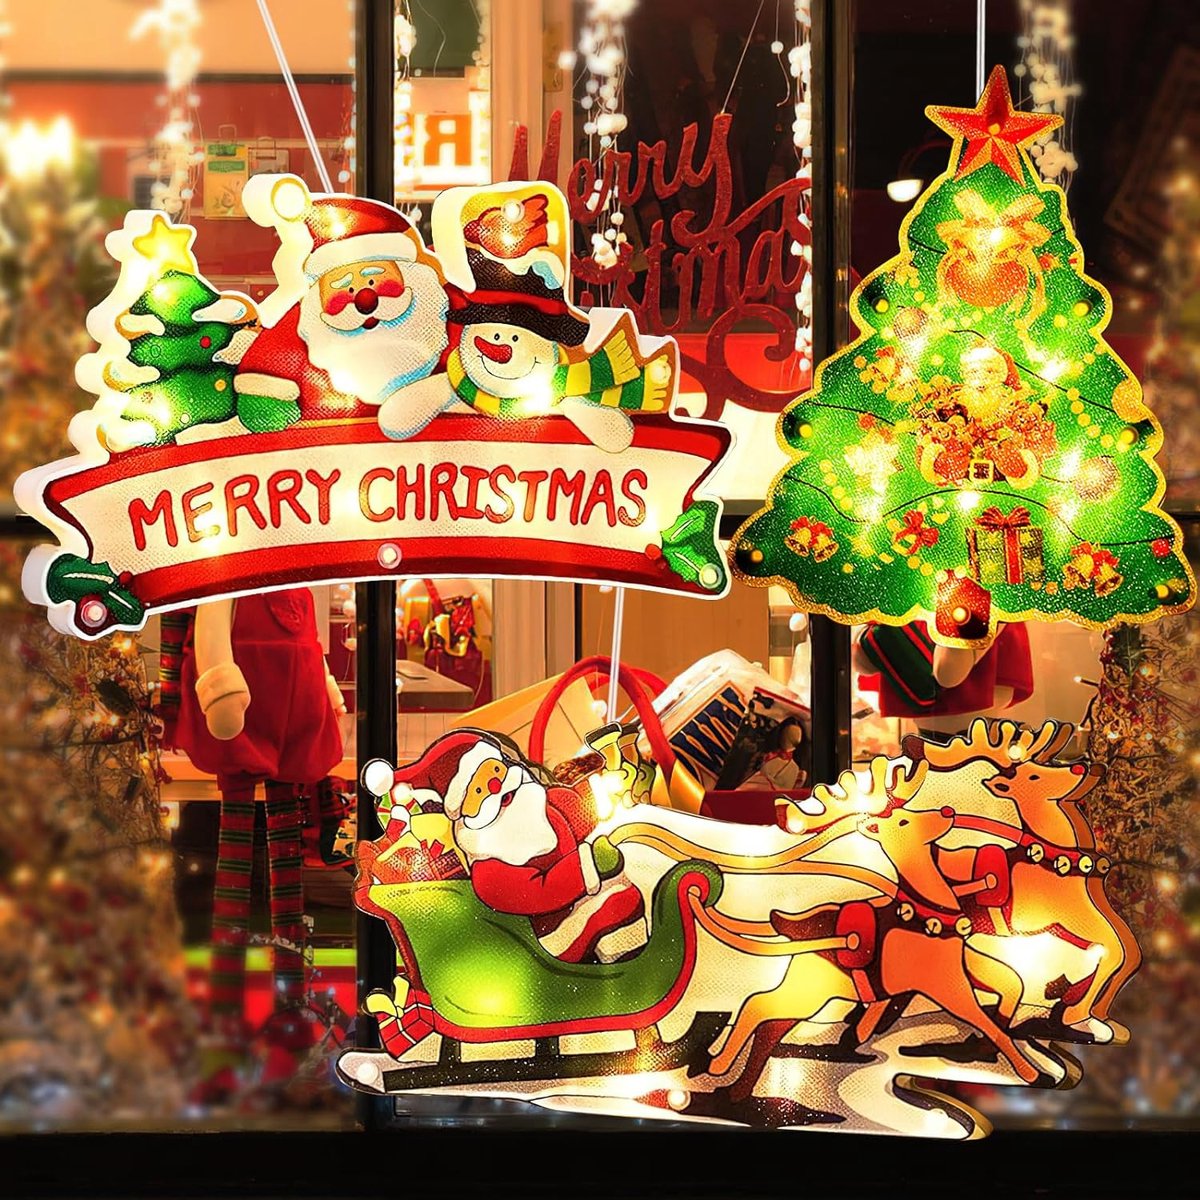 Kerstverlichting voor ramen, 3 x zuignap, lichtketting, Kerstmis, kerstdecoratie raam, raamdecoratie, hangend raamlicht met zuignap, led, voor kerstdecoratie, feest